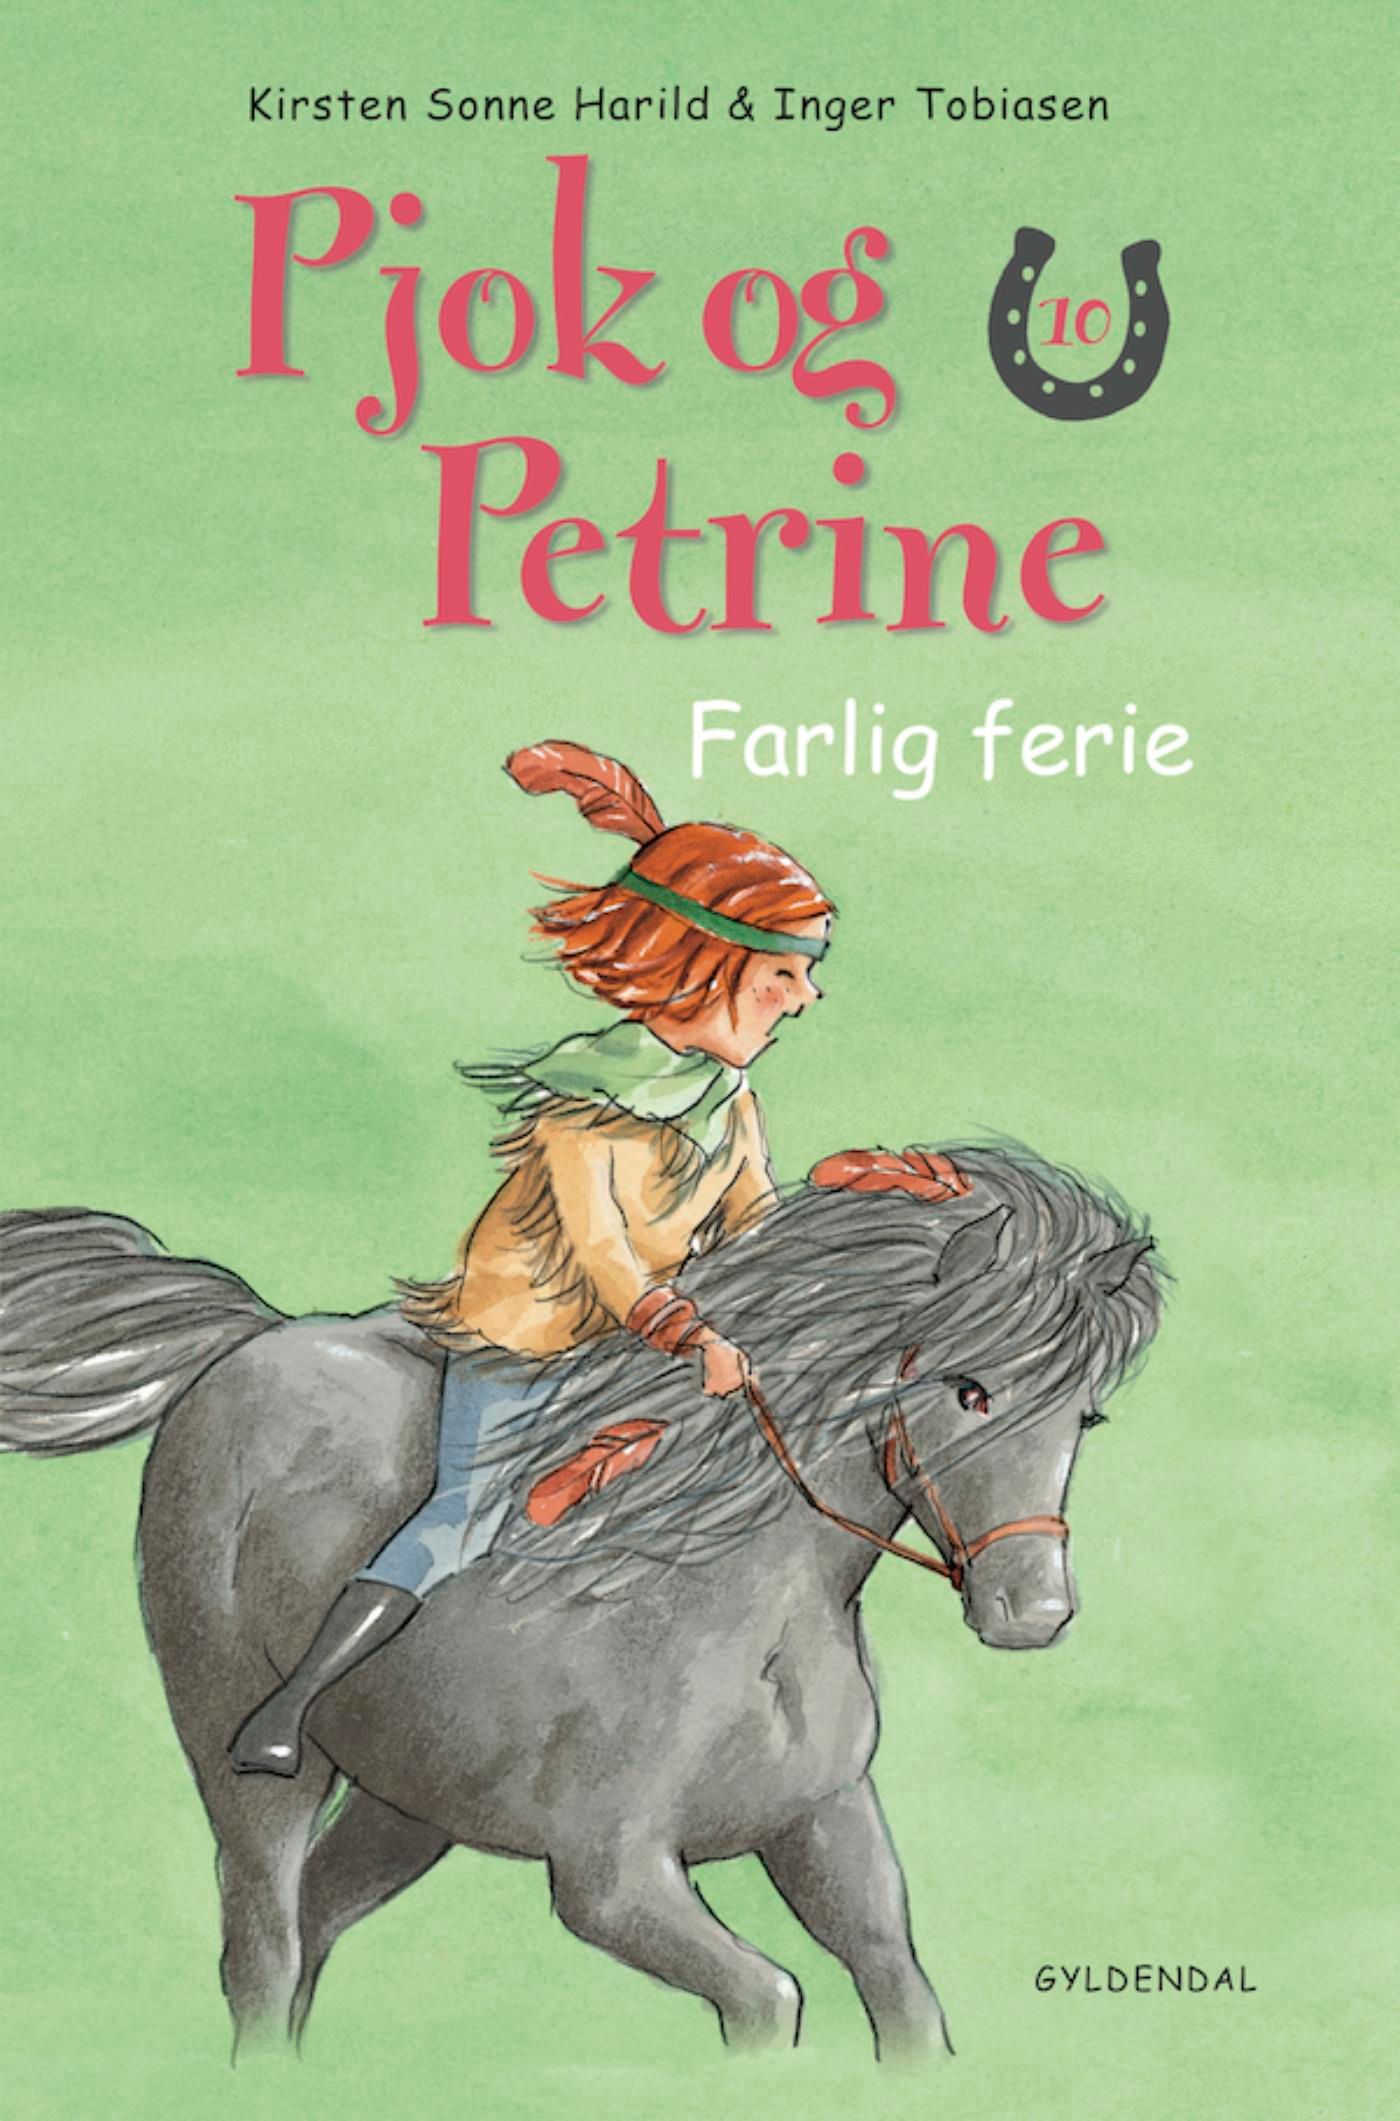 Pjok og Petrine - 10 Farlig ferie, e-bok av Kirsten Sonne Harild